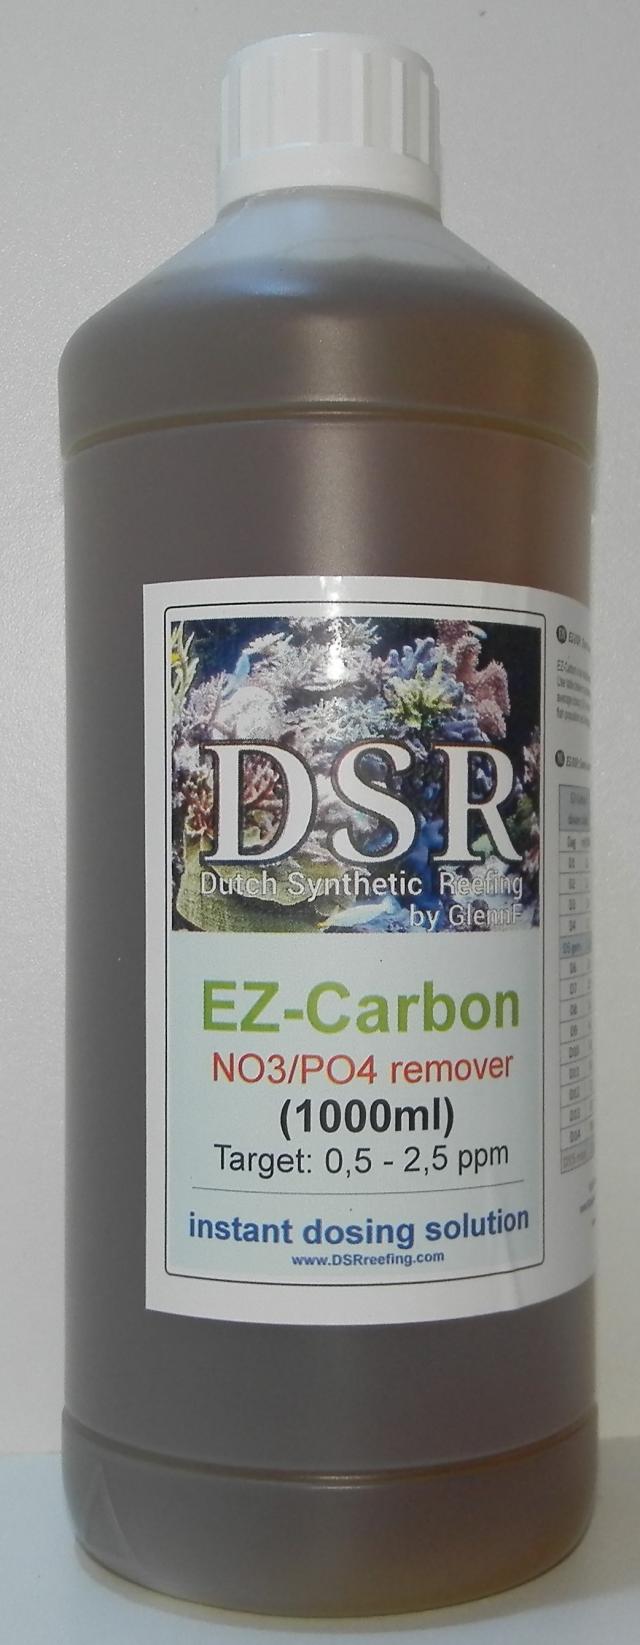 EZ-carbon 1000ml